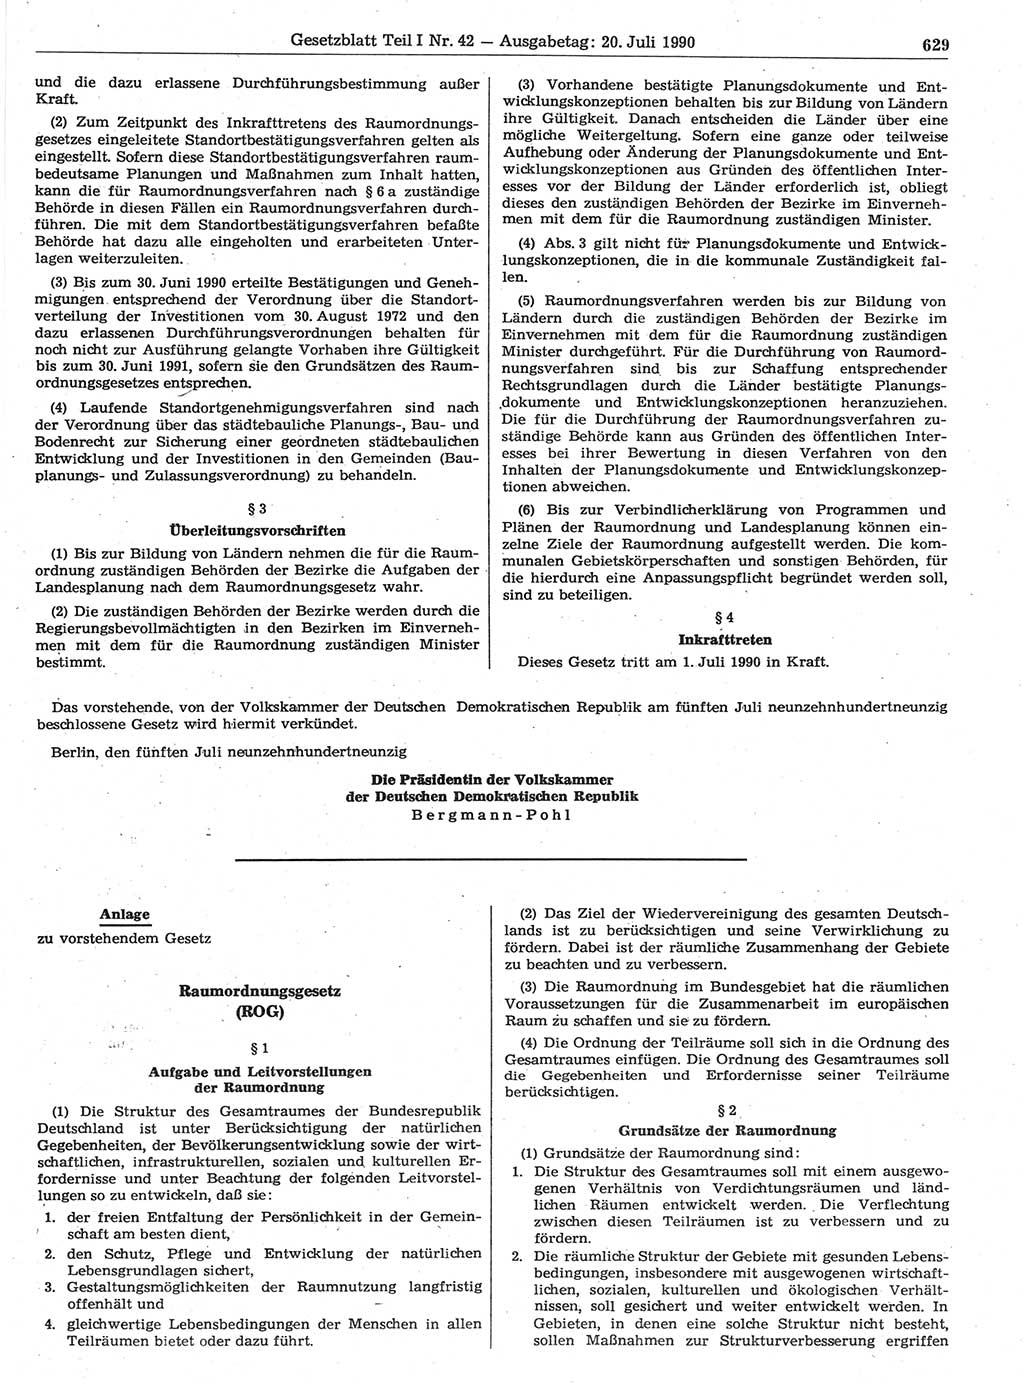 Gesetzblatt (GBl.) der Deutschen Demokratischen Republik (DDR) Teil Ⅰ 1990, Seite 629 (GBl. DDR Ⅰ 1990, S. 629)